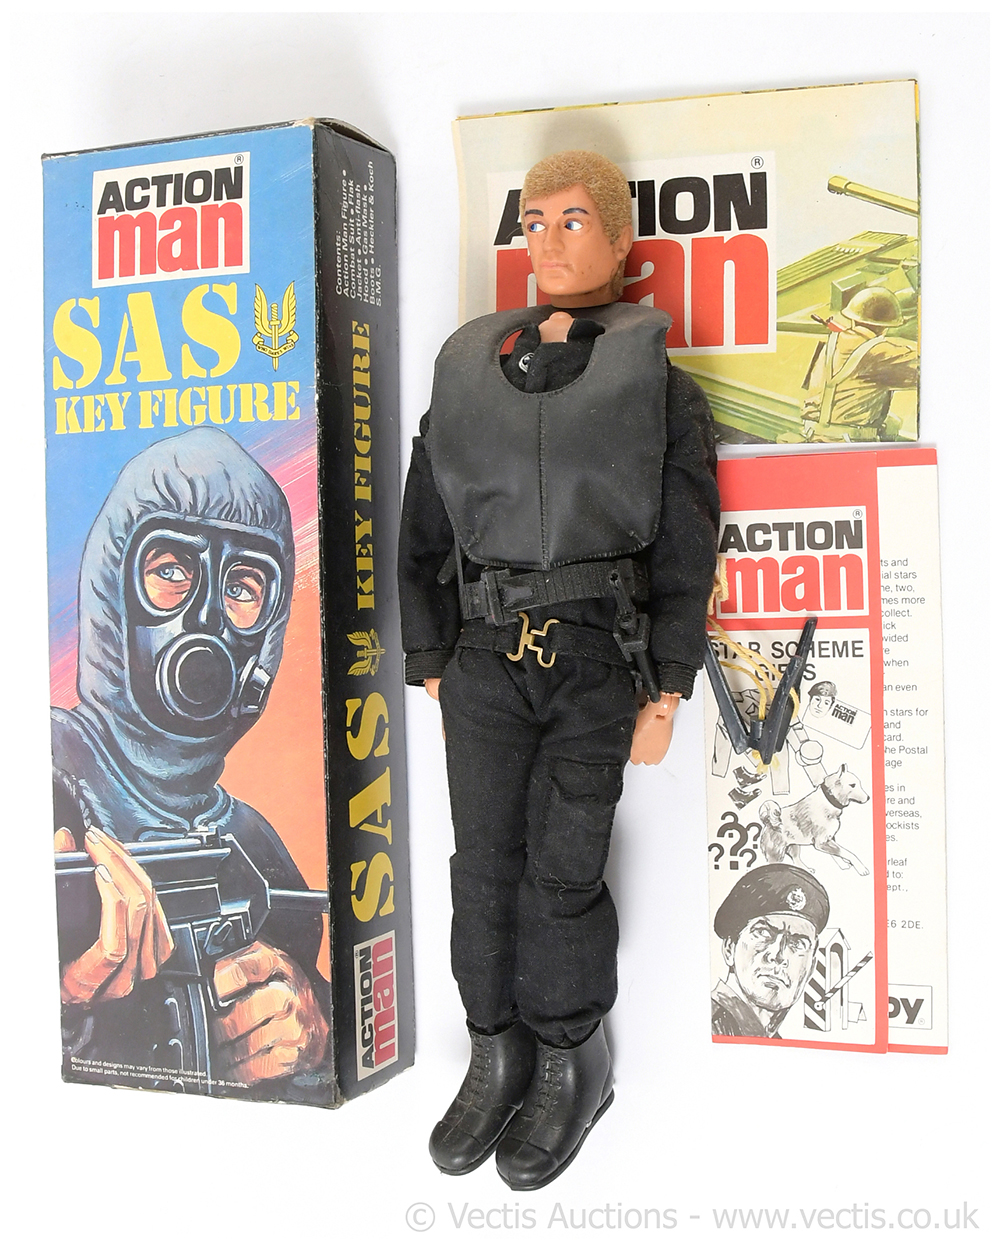 Palitoy Action Man Vintage SAS key figure